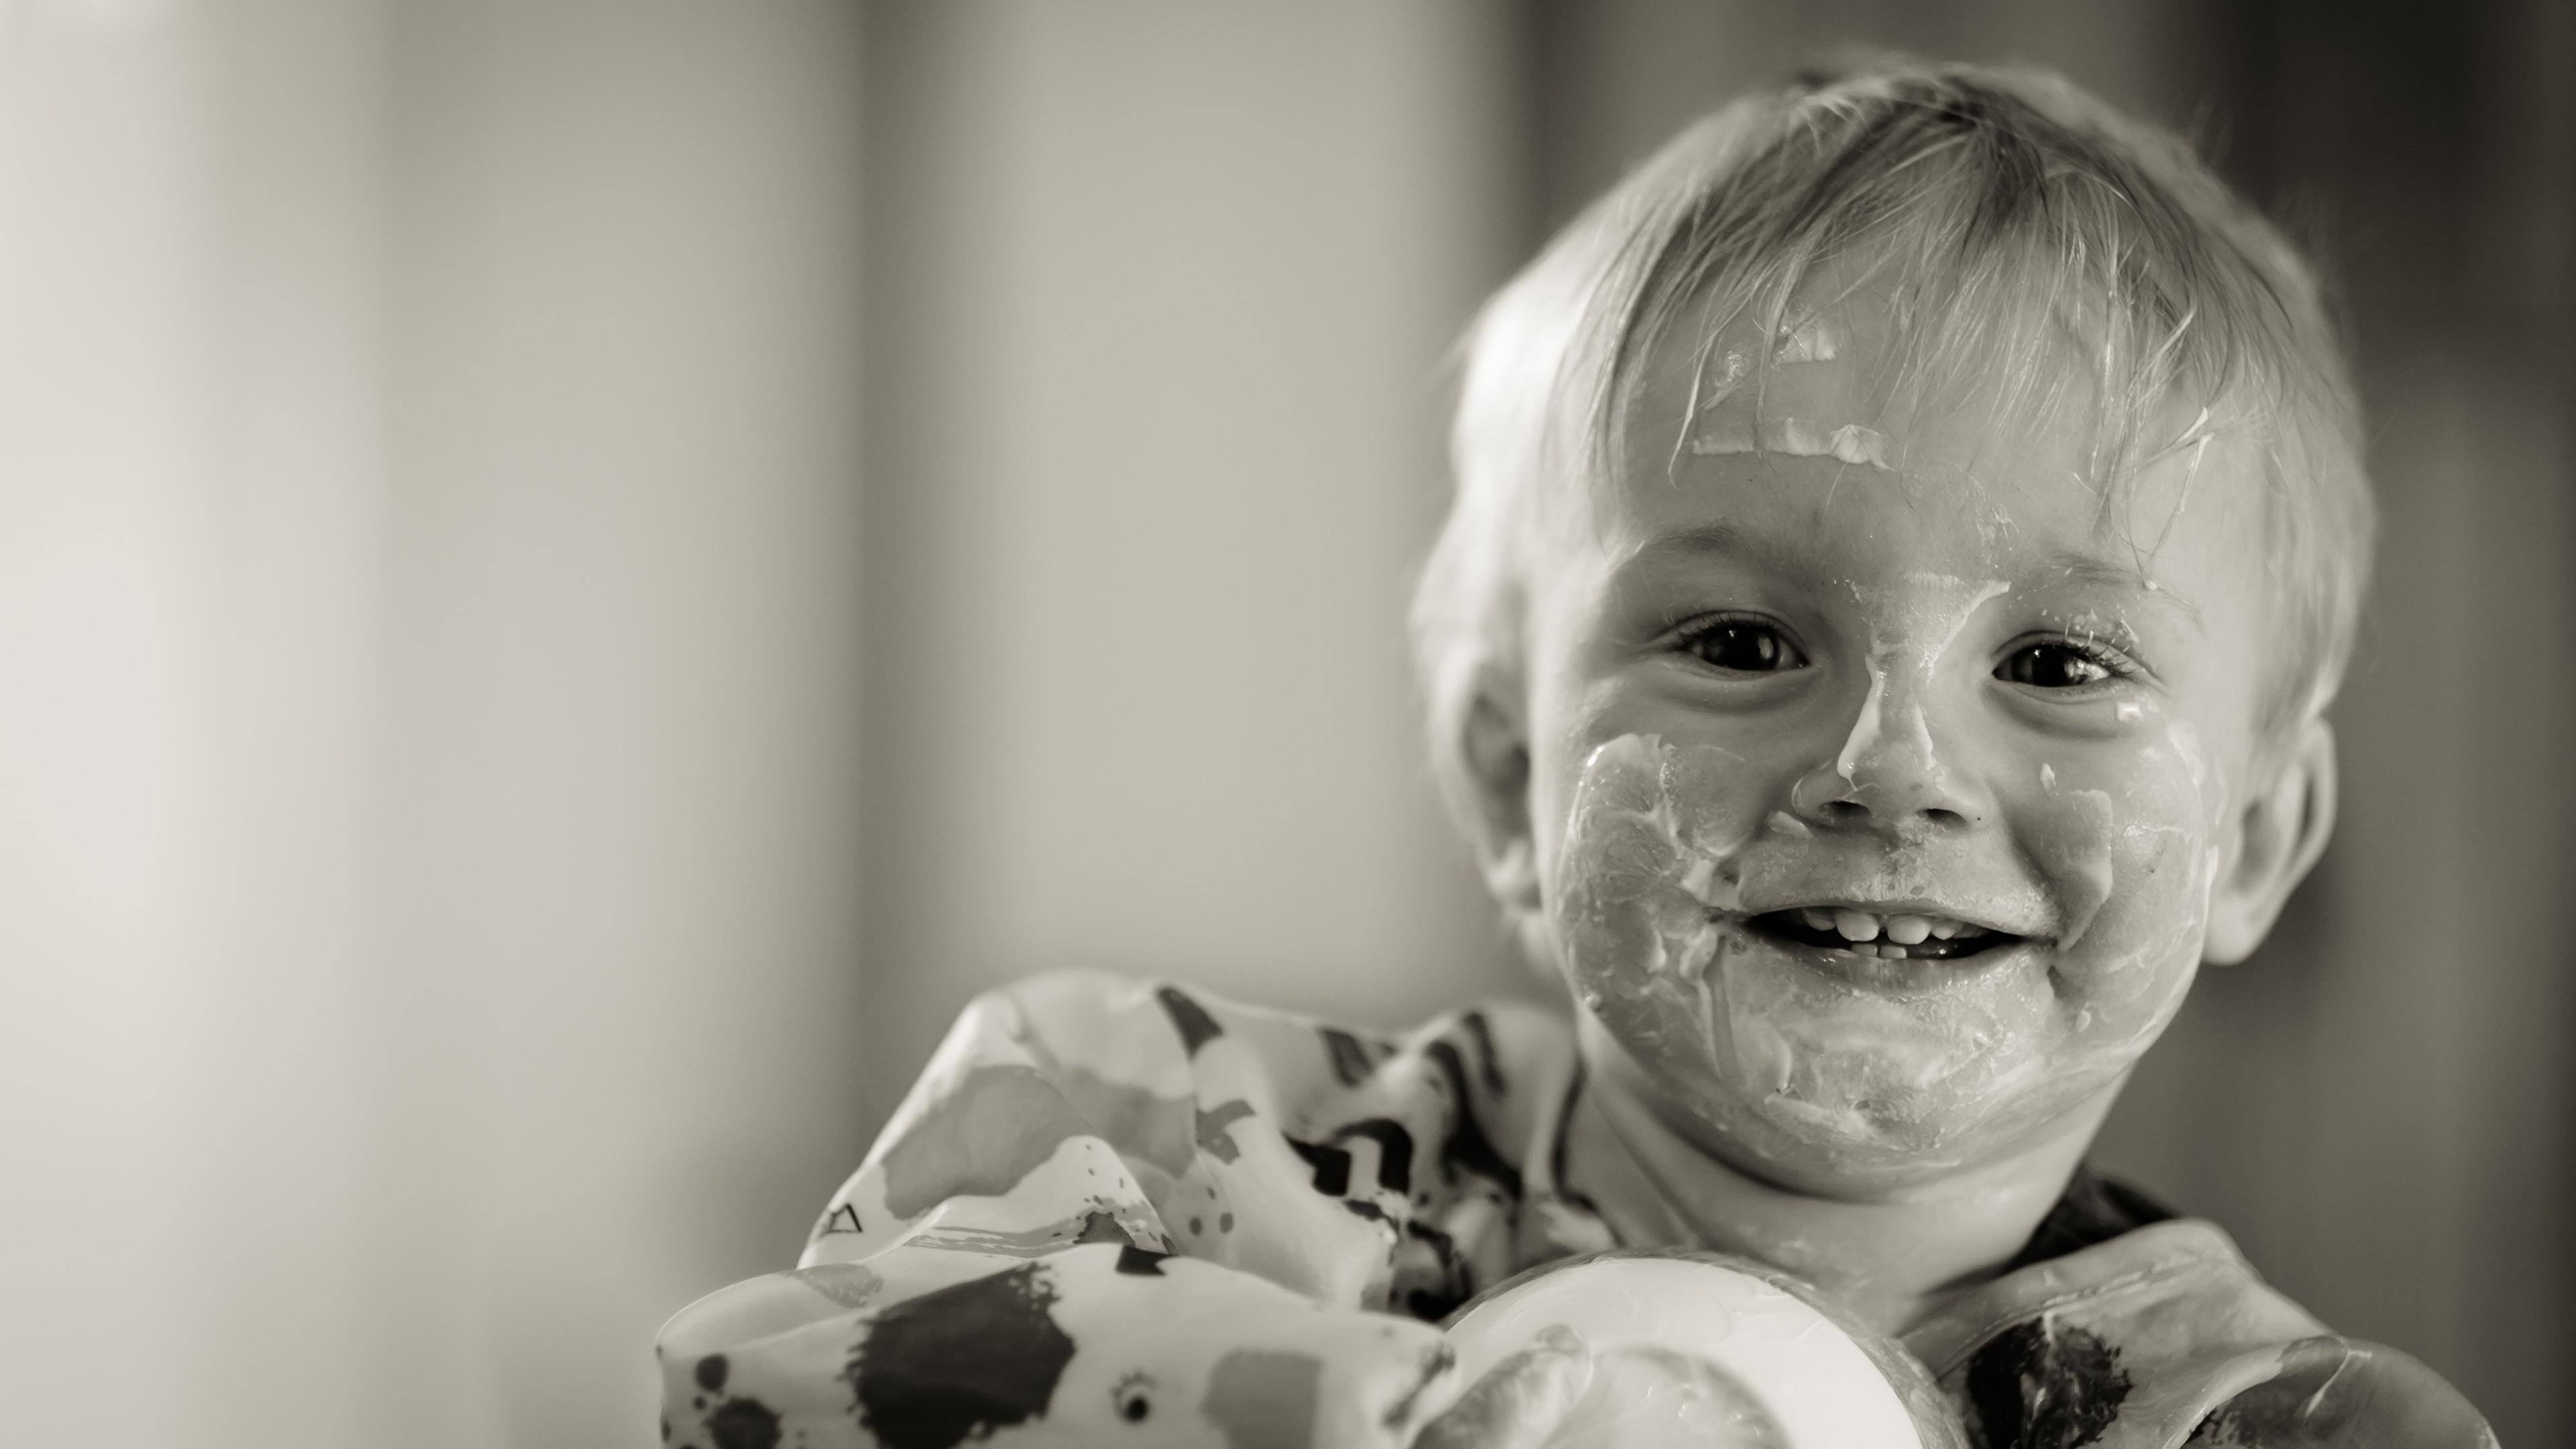 壁紙 3840x2160 ヨーグルト 少年 凝視 微笑み 白黒 おもしろい 子供 ダウンロード 写真